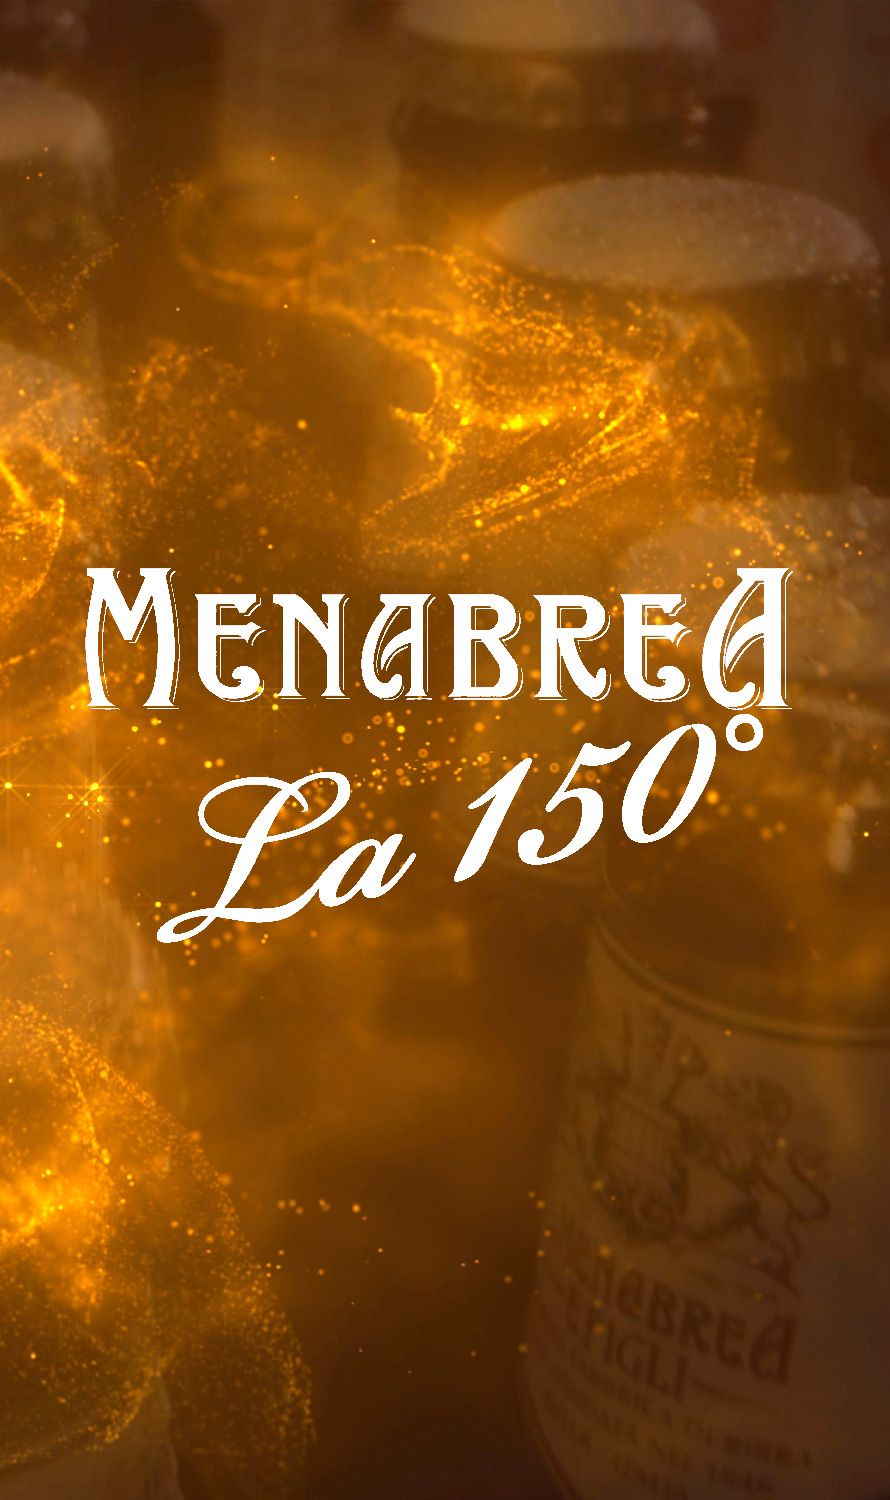 Menabrea Le 150° un classico in continua evoluzione intro page main Image mobile